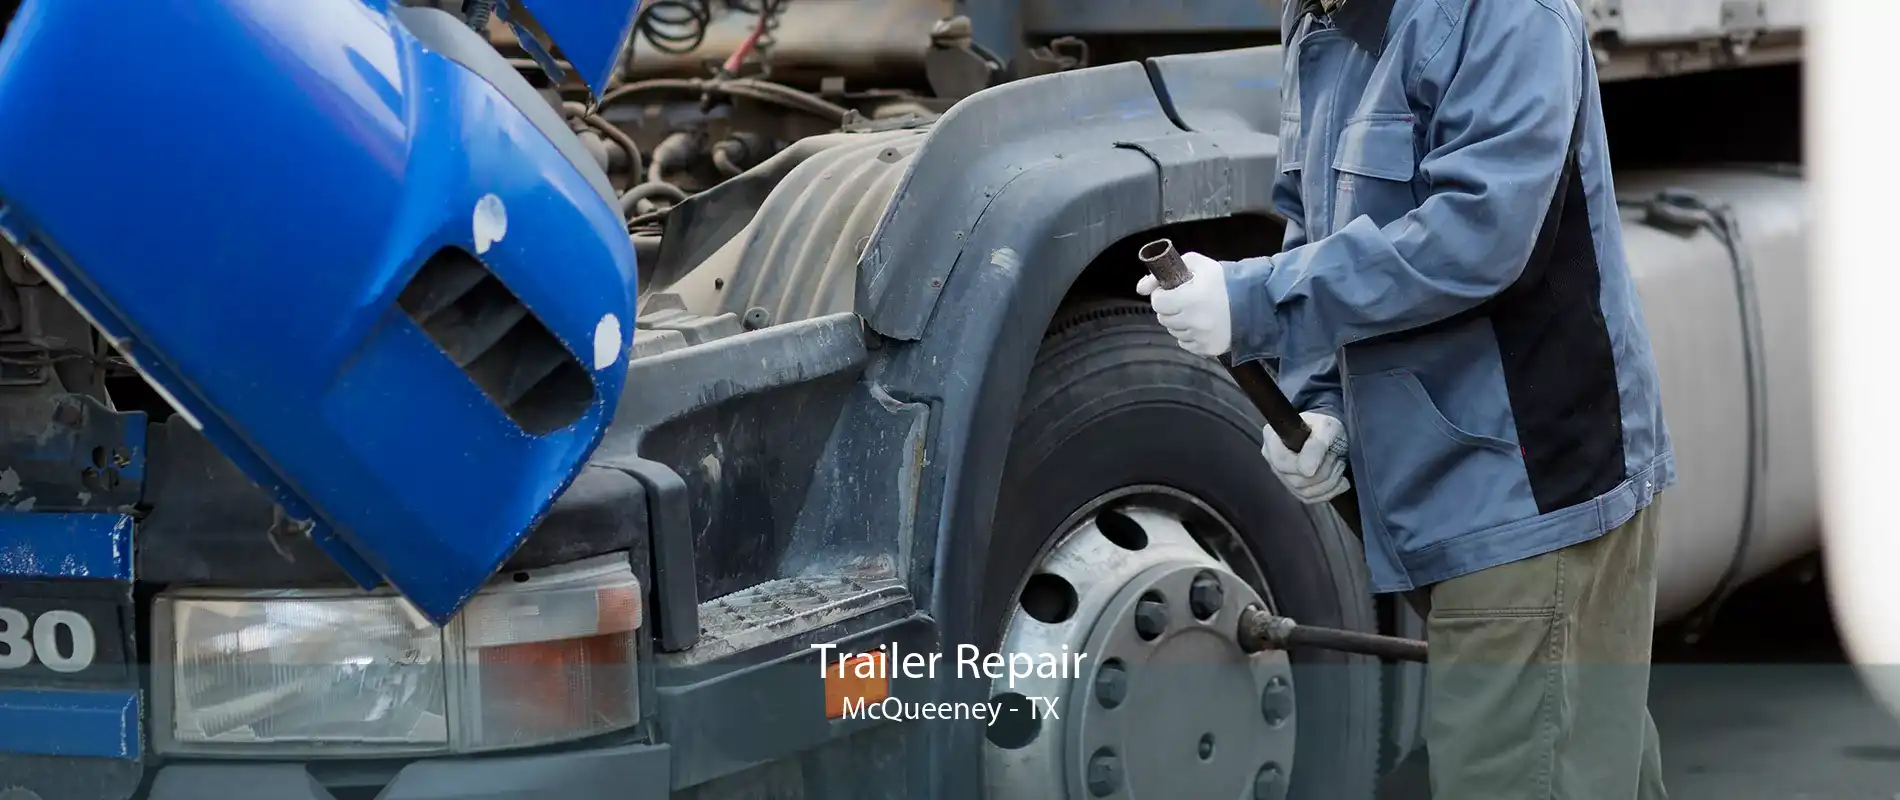 Trailer Repair McQueeney - TX